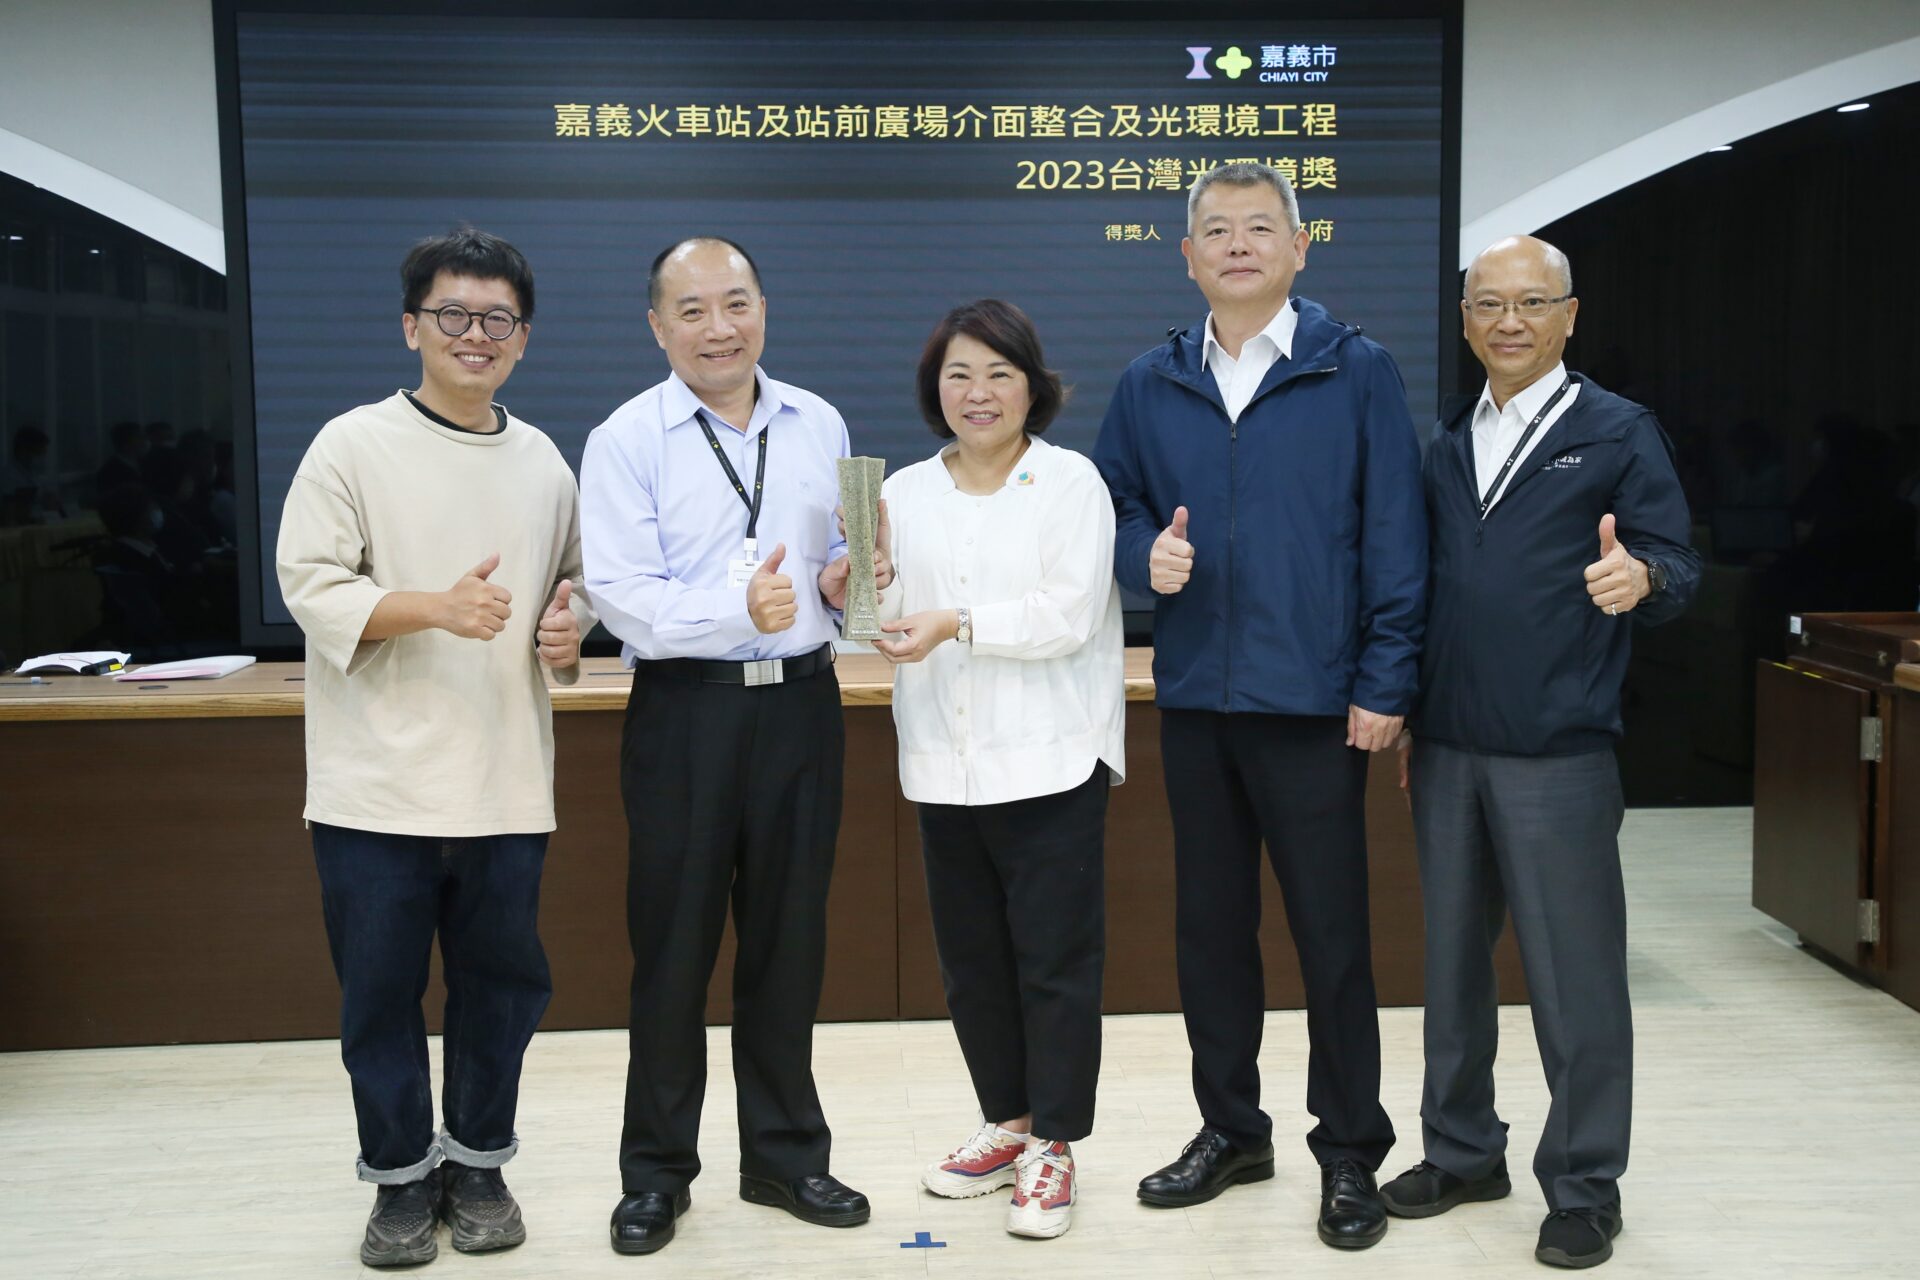 嘉義火車站前光環境改造 重塑古蹟之美 獲2023台灣光環境獎